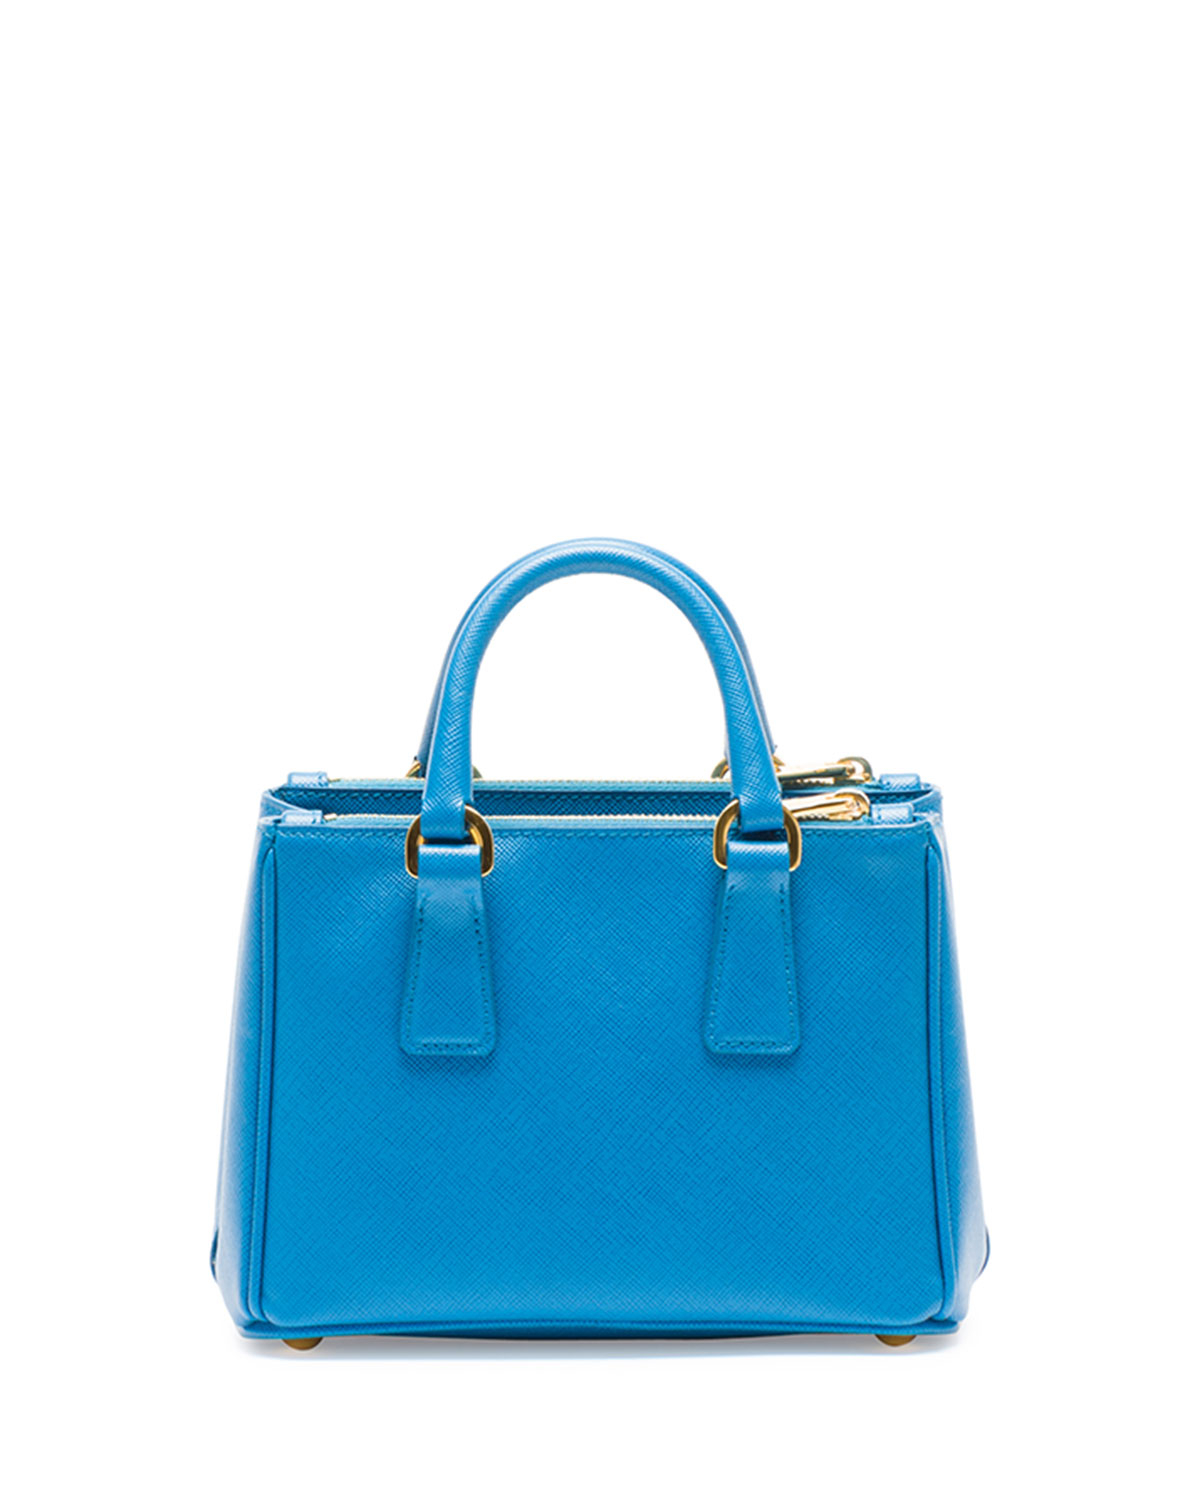 Prada Saffiano Mini Galleria Crossbody Bag in Turquoise (Blue) - Lyst